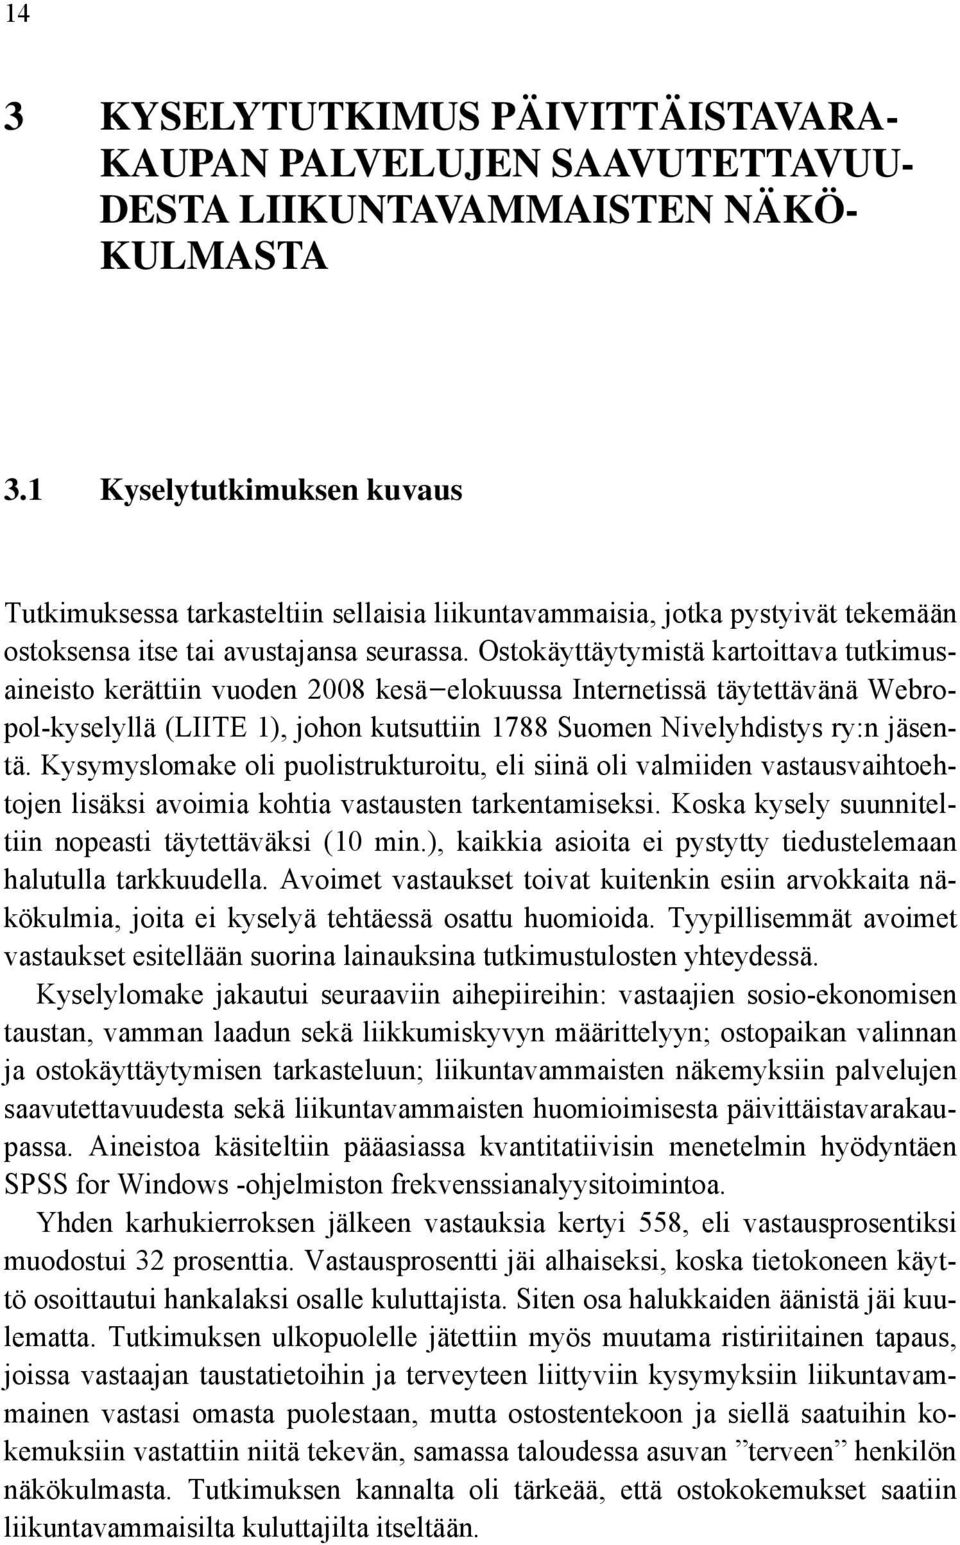 Ostokäyttäytymistä kartoittava tutkimusaineisto kerättiin vuoden 2008 kesä elokuussa Internetissä täytettävänä Webropol-kyselyllä (LIITE 1), johon kutsuttiin 1788 Suomen Nivelyhdistys ry:n jäsentä.